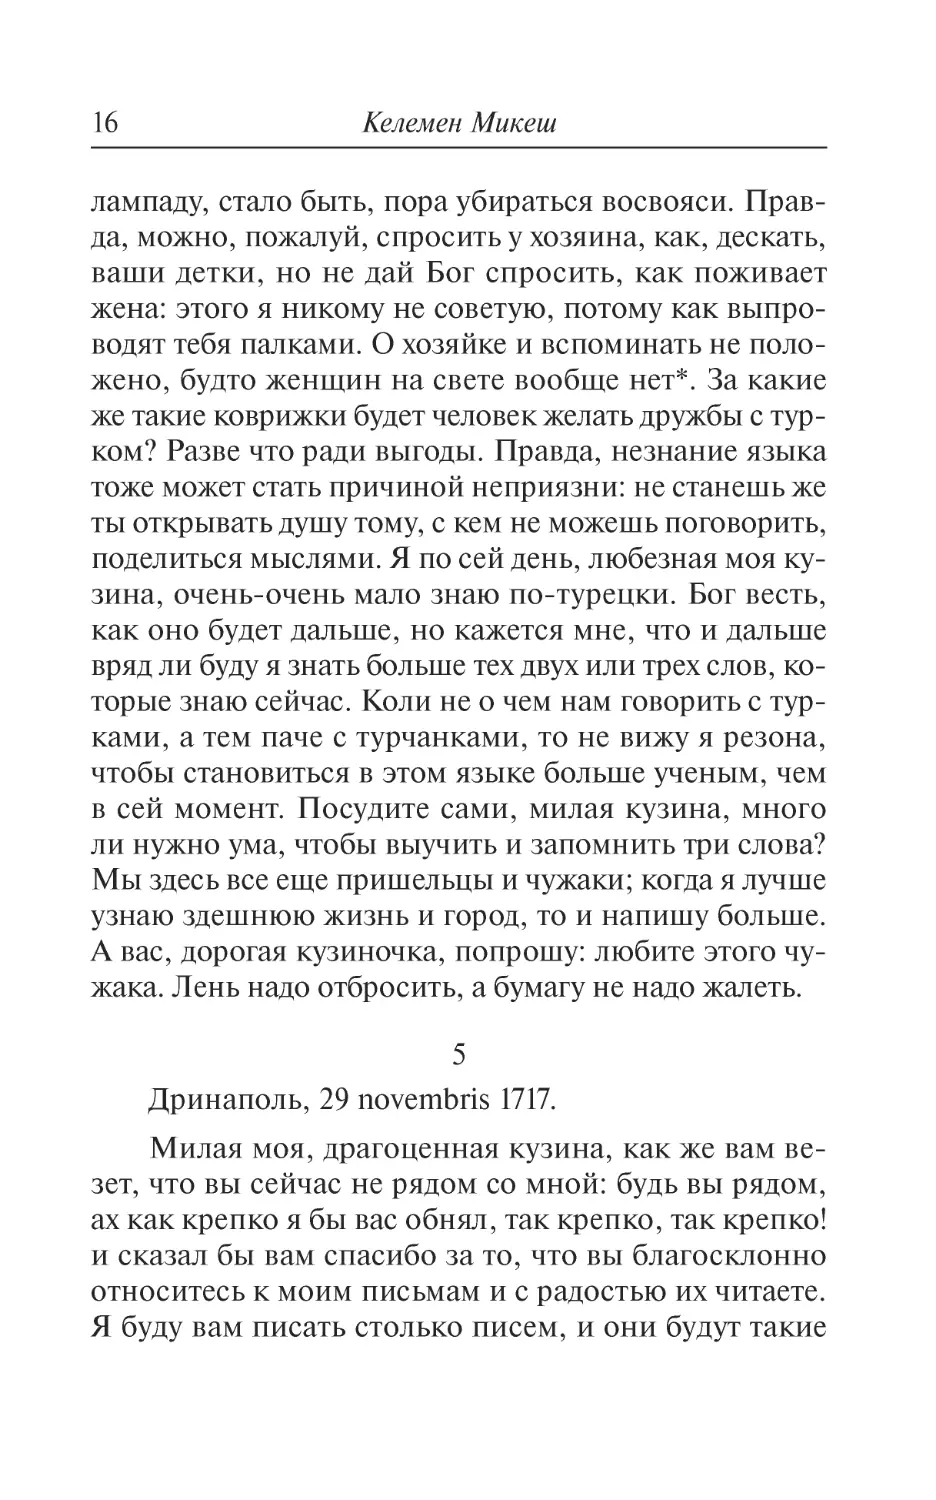 5. Дринаполь, 29 novembris 1717